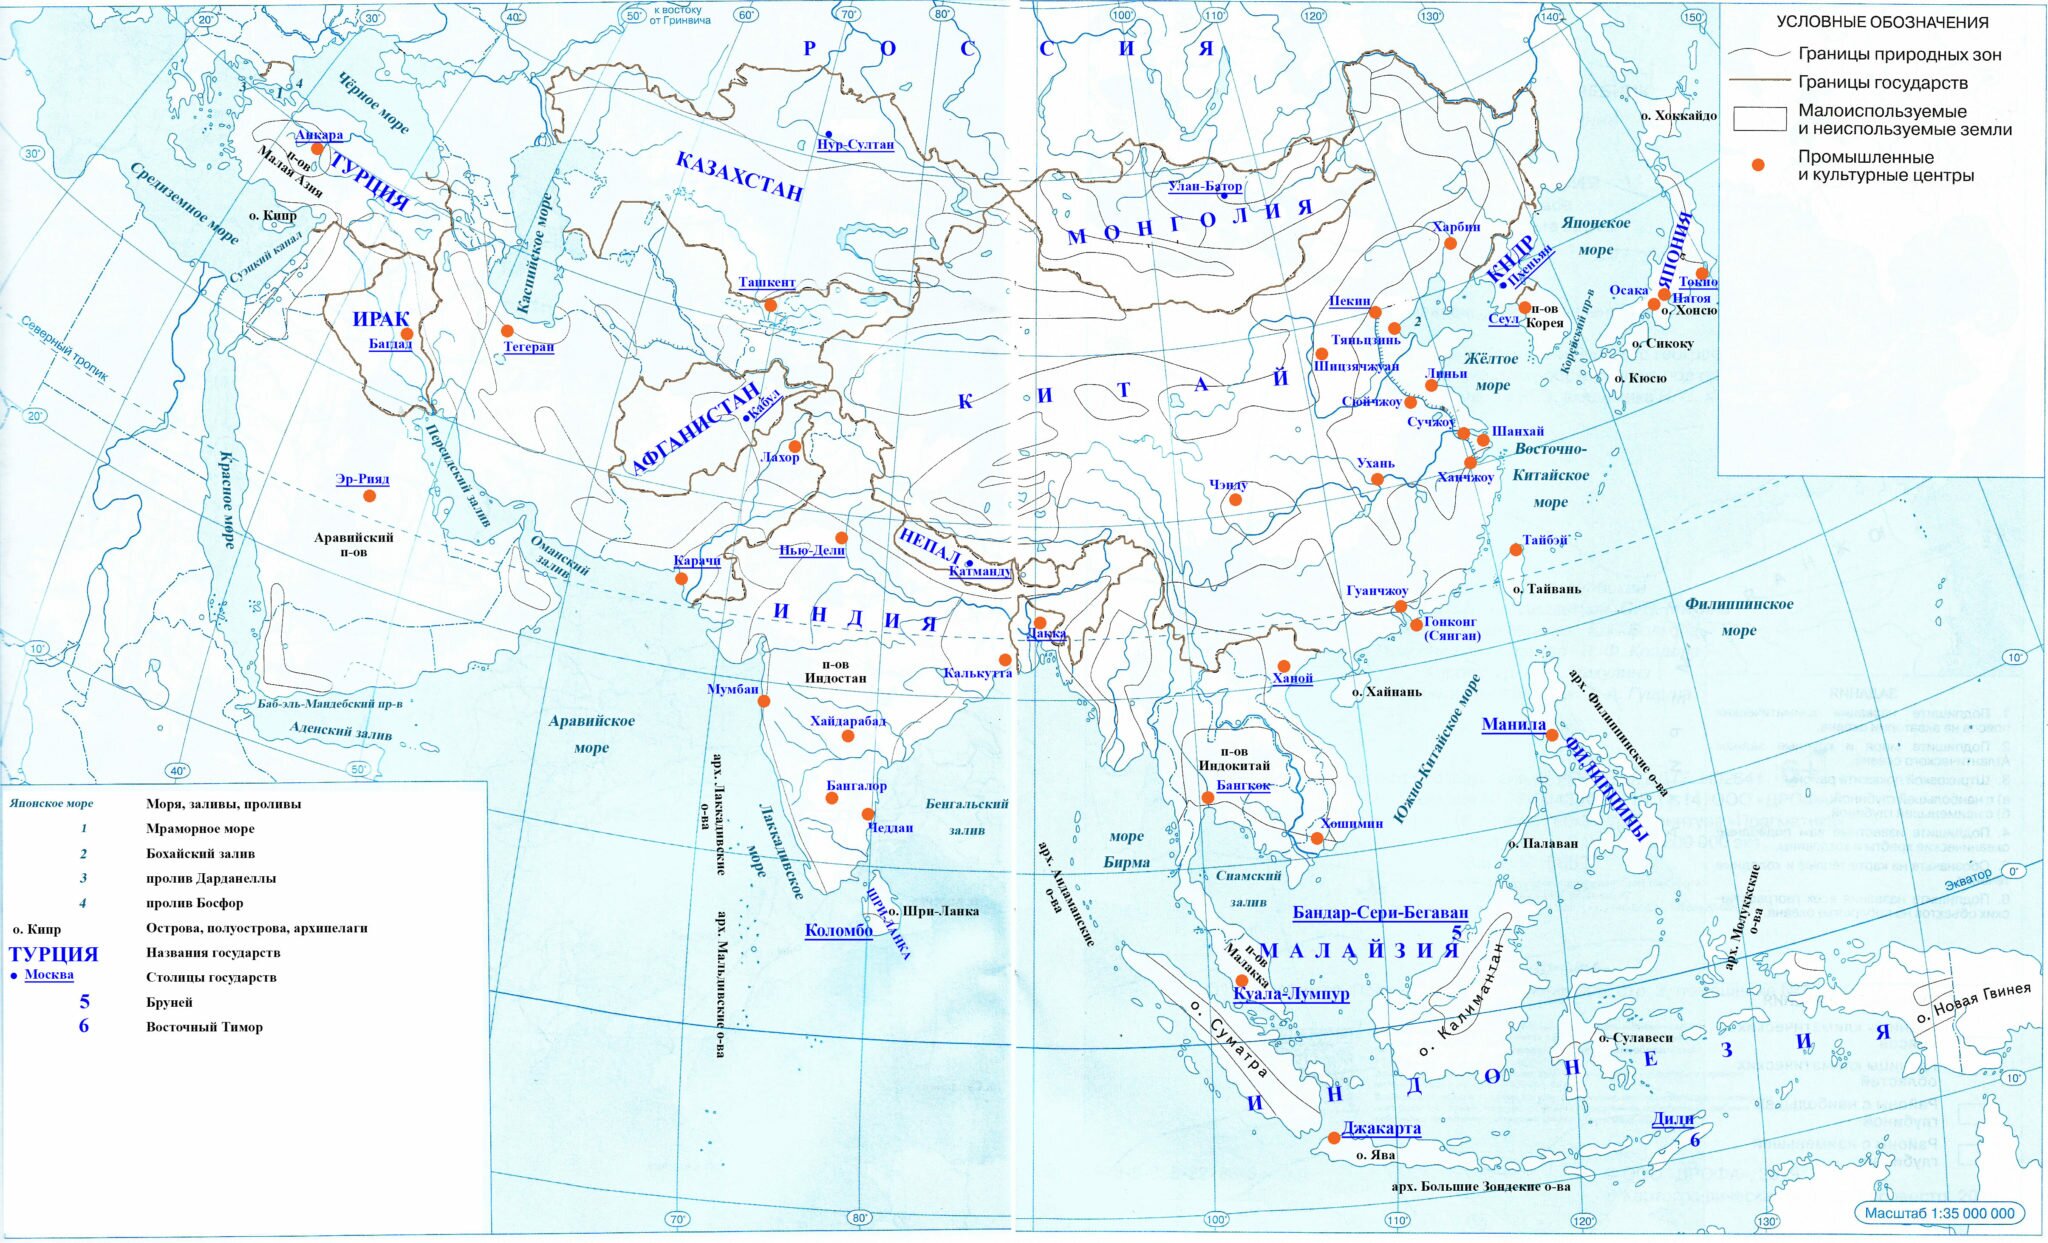 Где 7 карта. Зарубежная Азия моря заливы проливы. Зарубежная Азия контурная карта страны и столицы. Моря, заливы, проливы Азии на контурной карте. Карта зарубежной Азии моря заливы проливы.